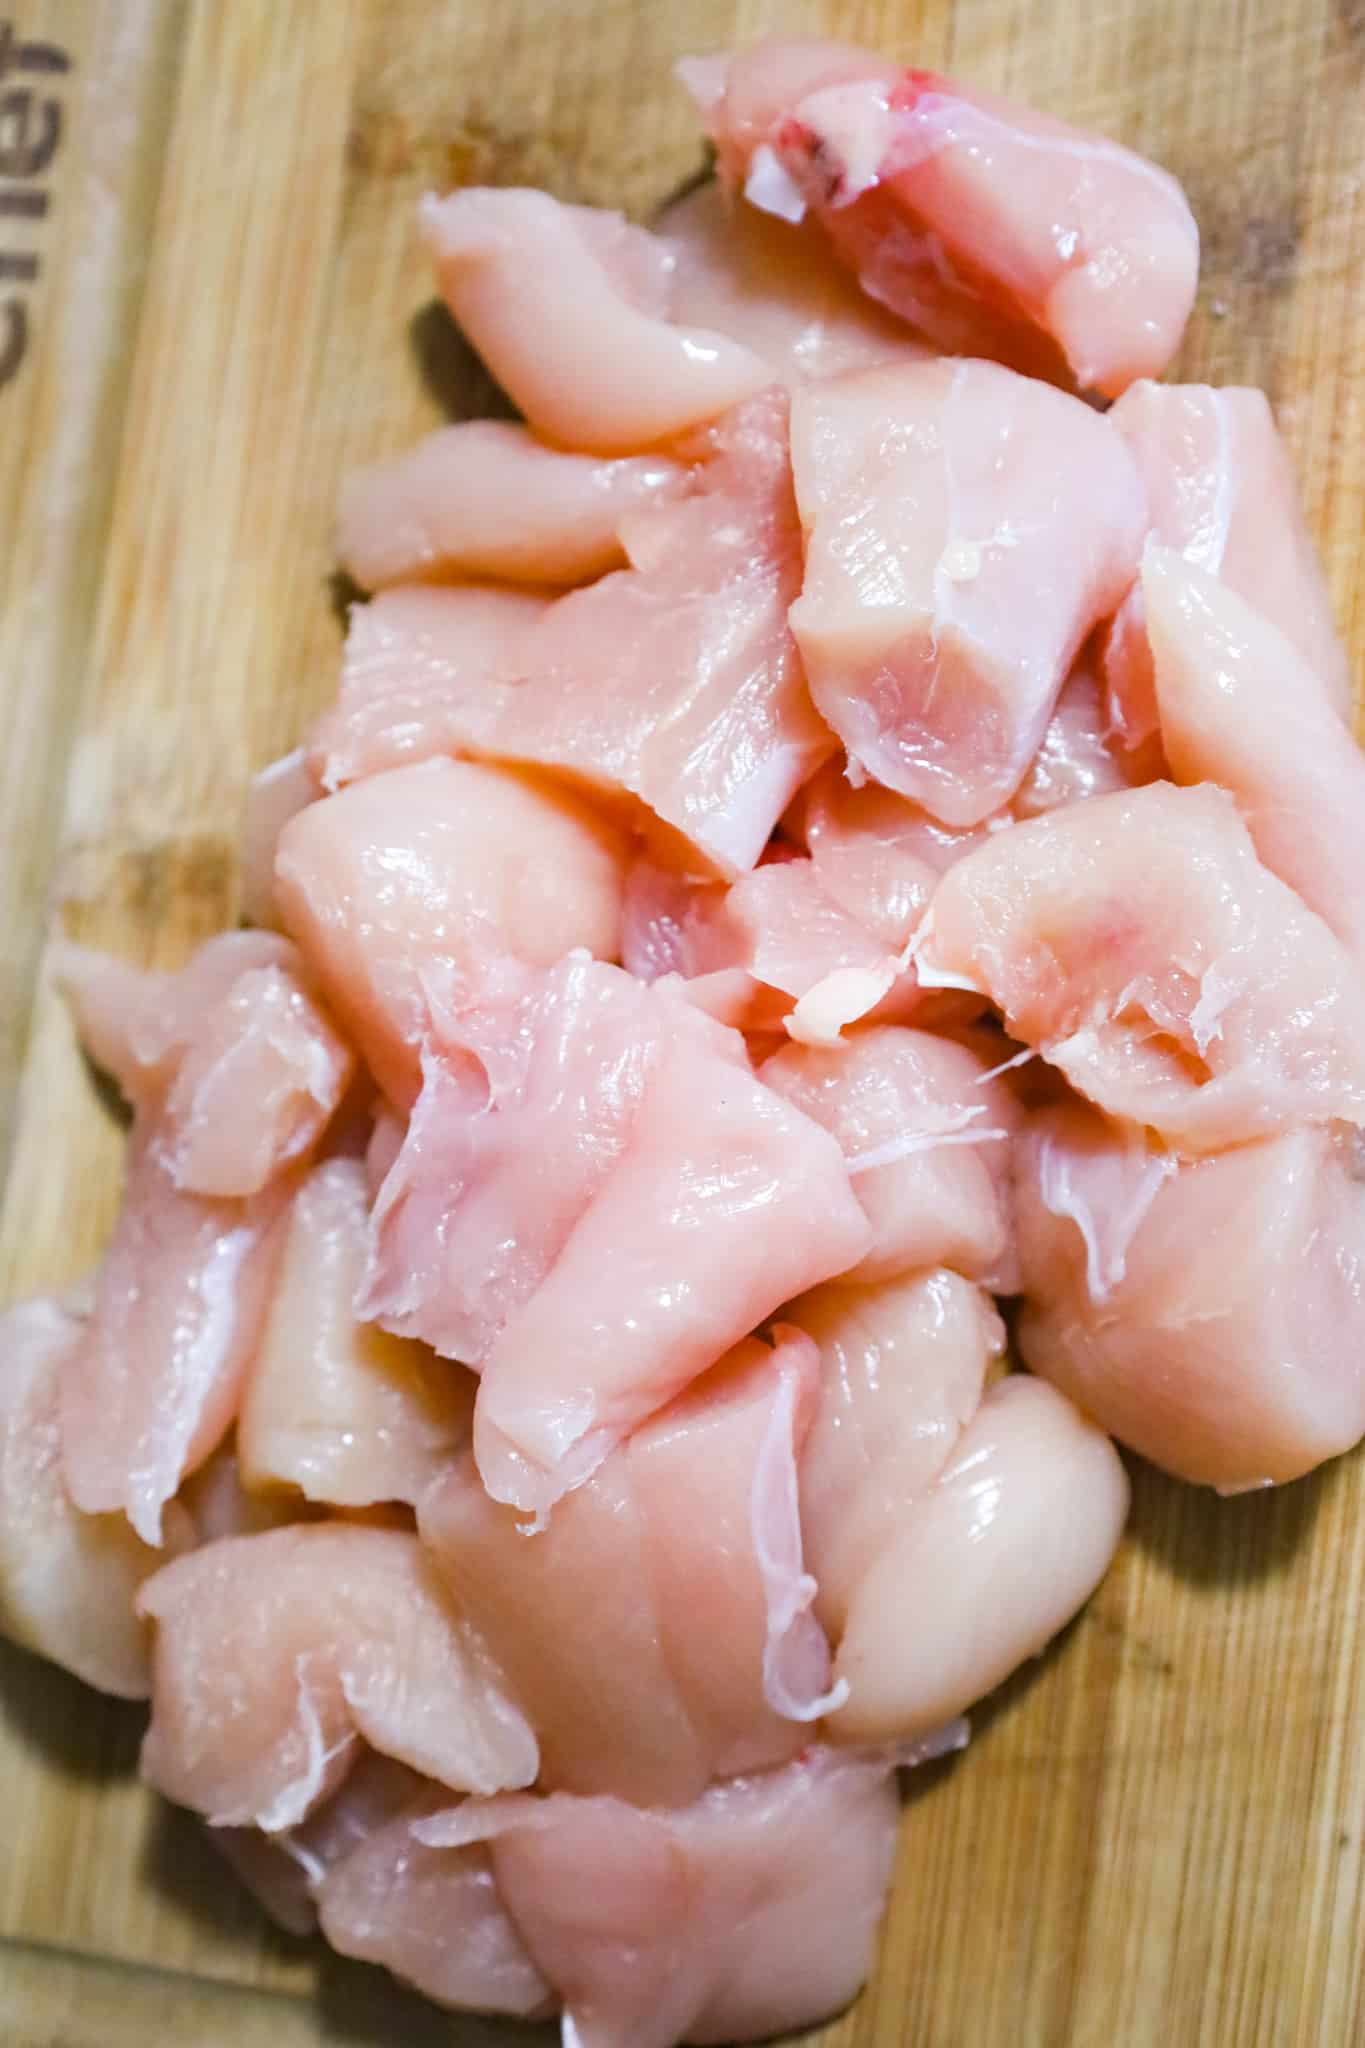 raw chicken breast chunks on a cutting board